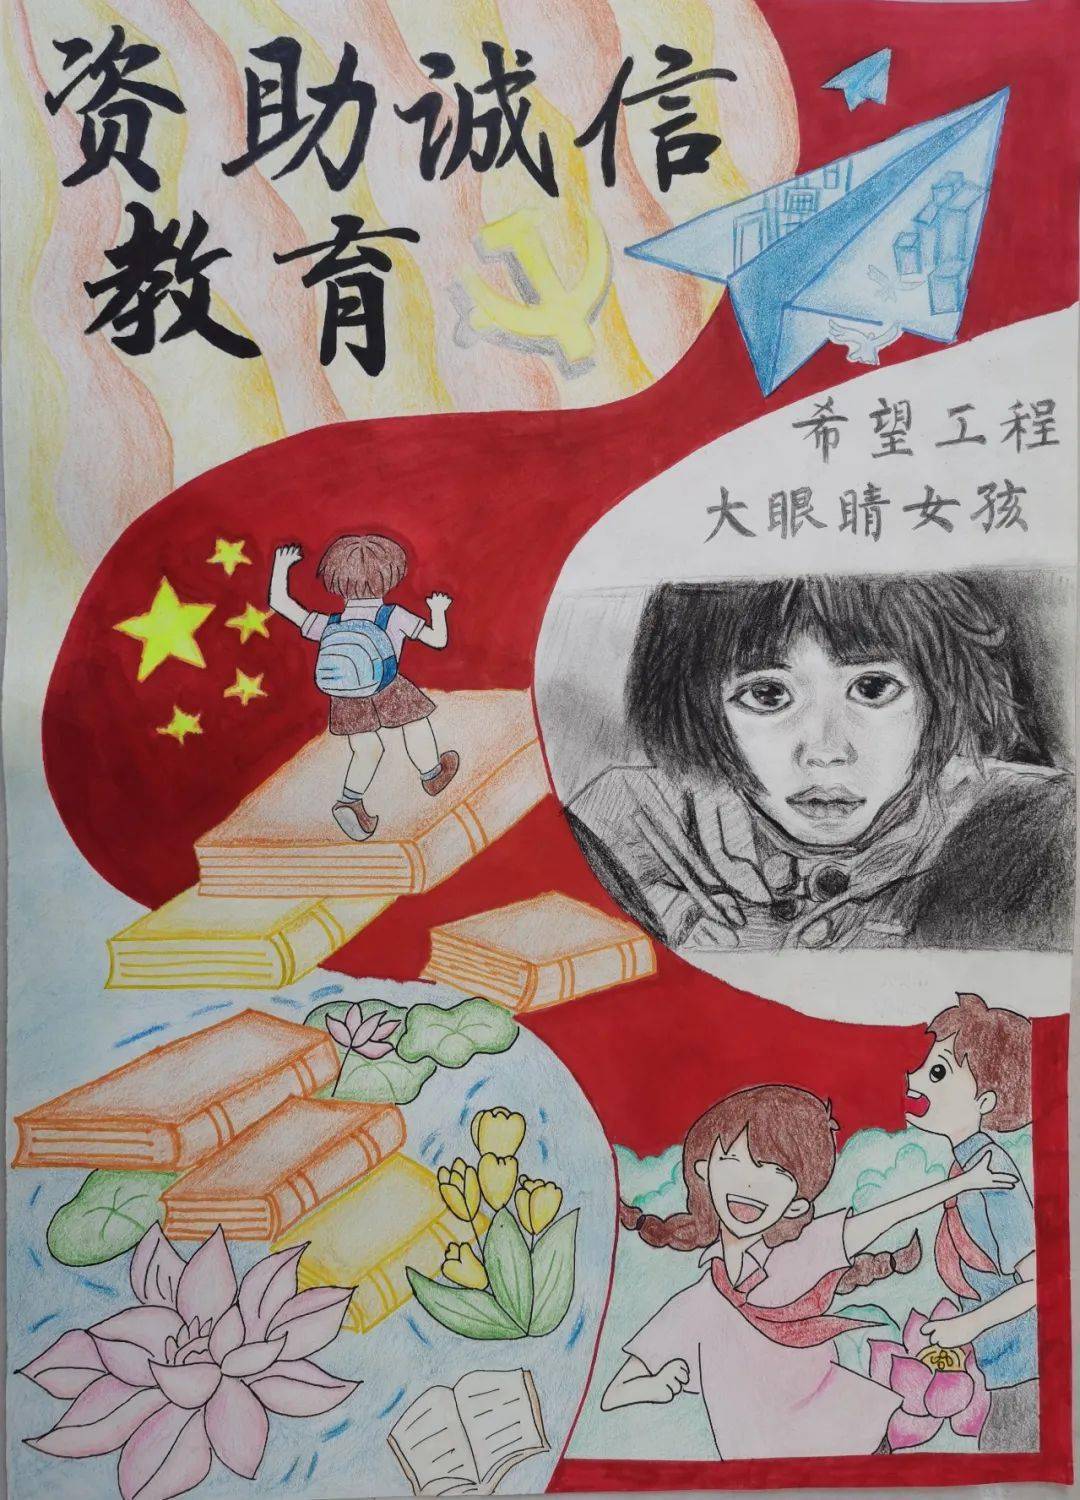 革命老区金寨县大眼睛女孩苏明娟在希望工程的帮助下励志成才的故事